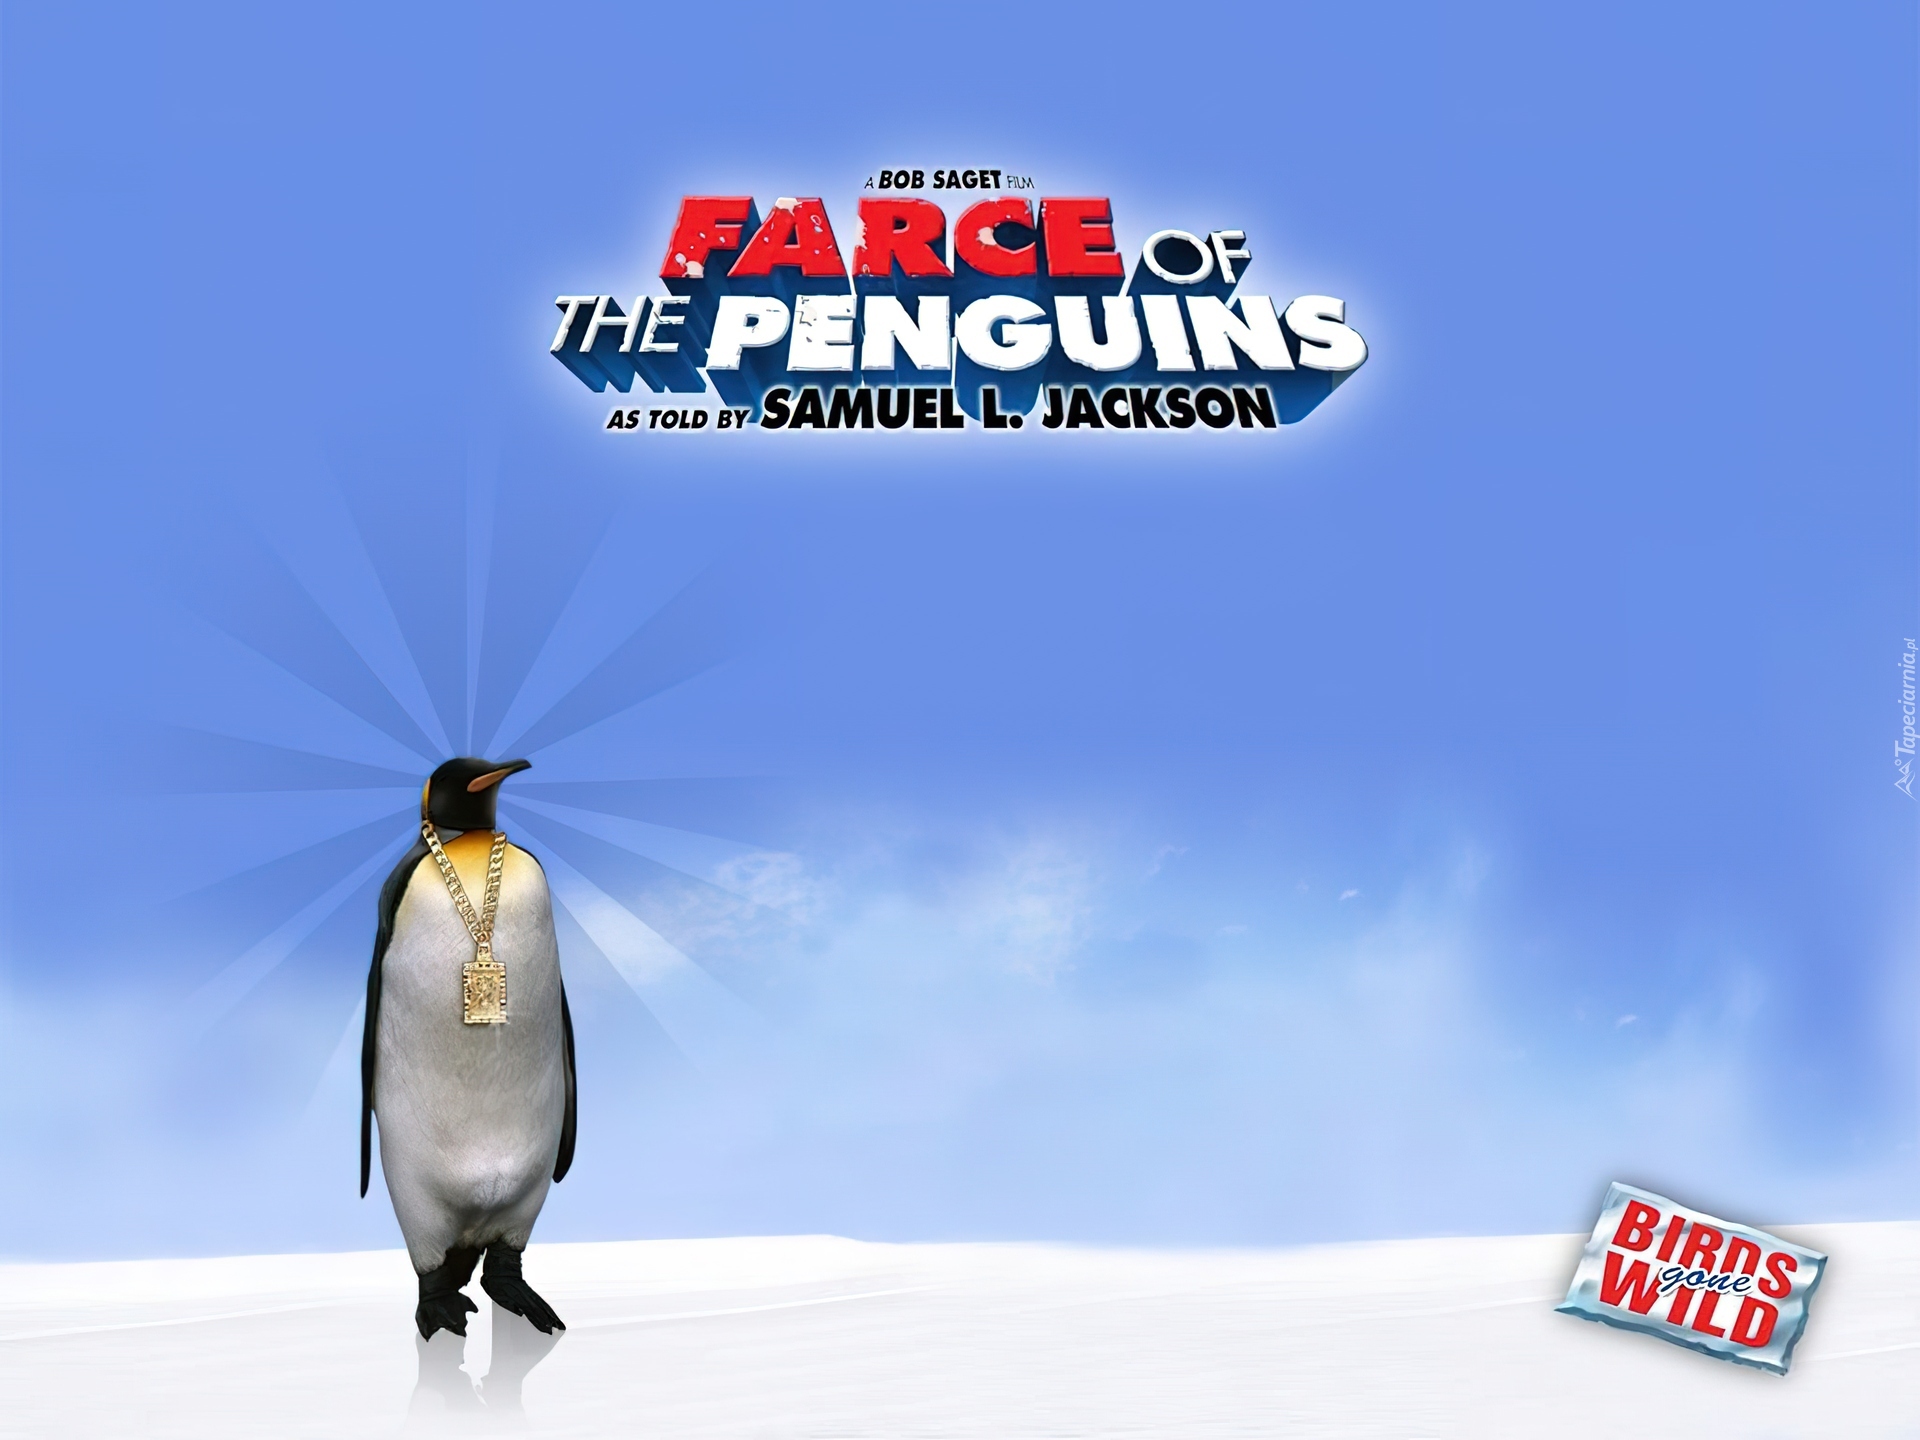 Farce of the Penguins 2006 - Full Cast Crew - IMDb